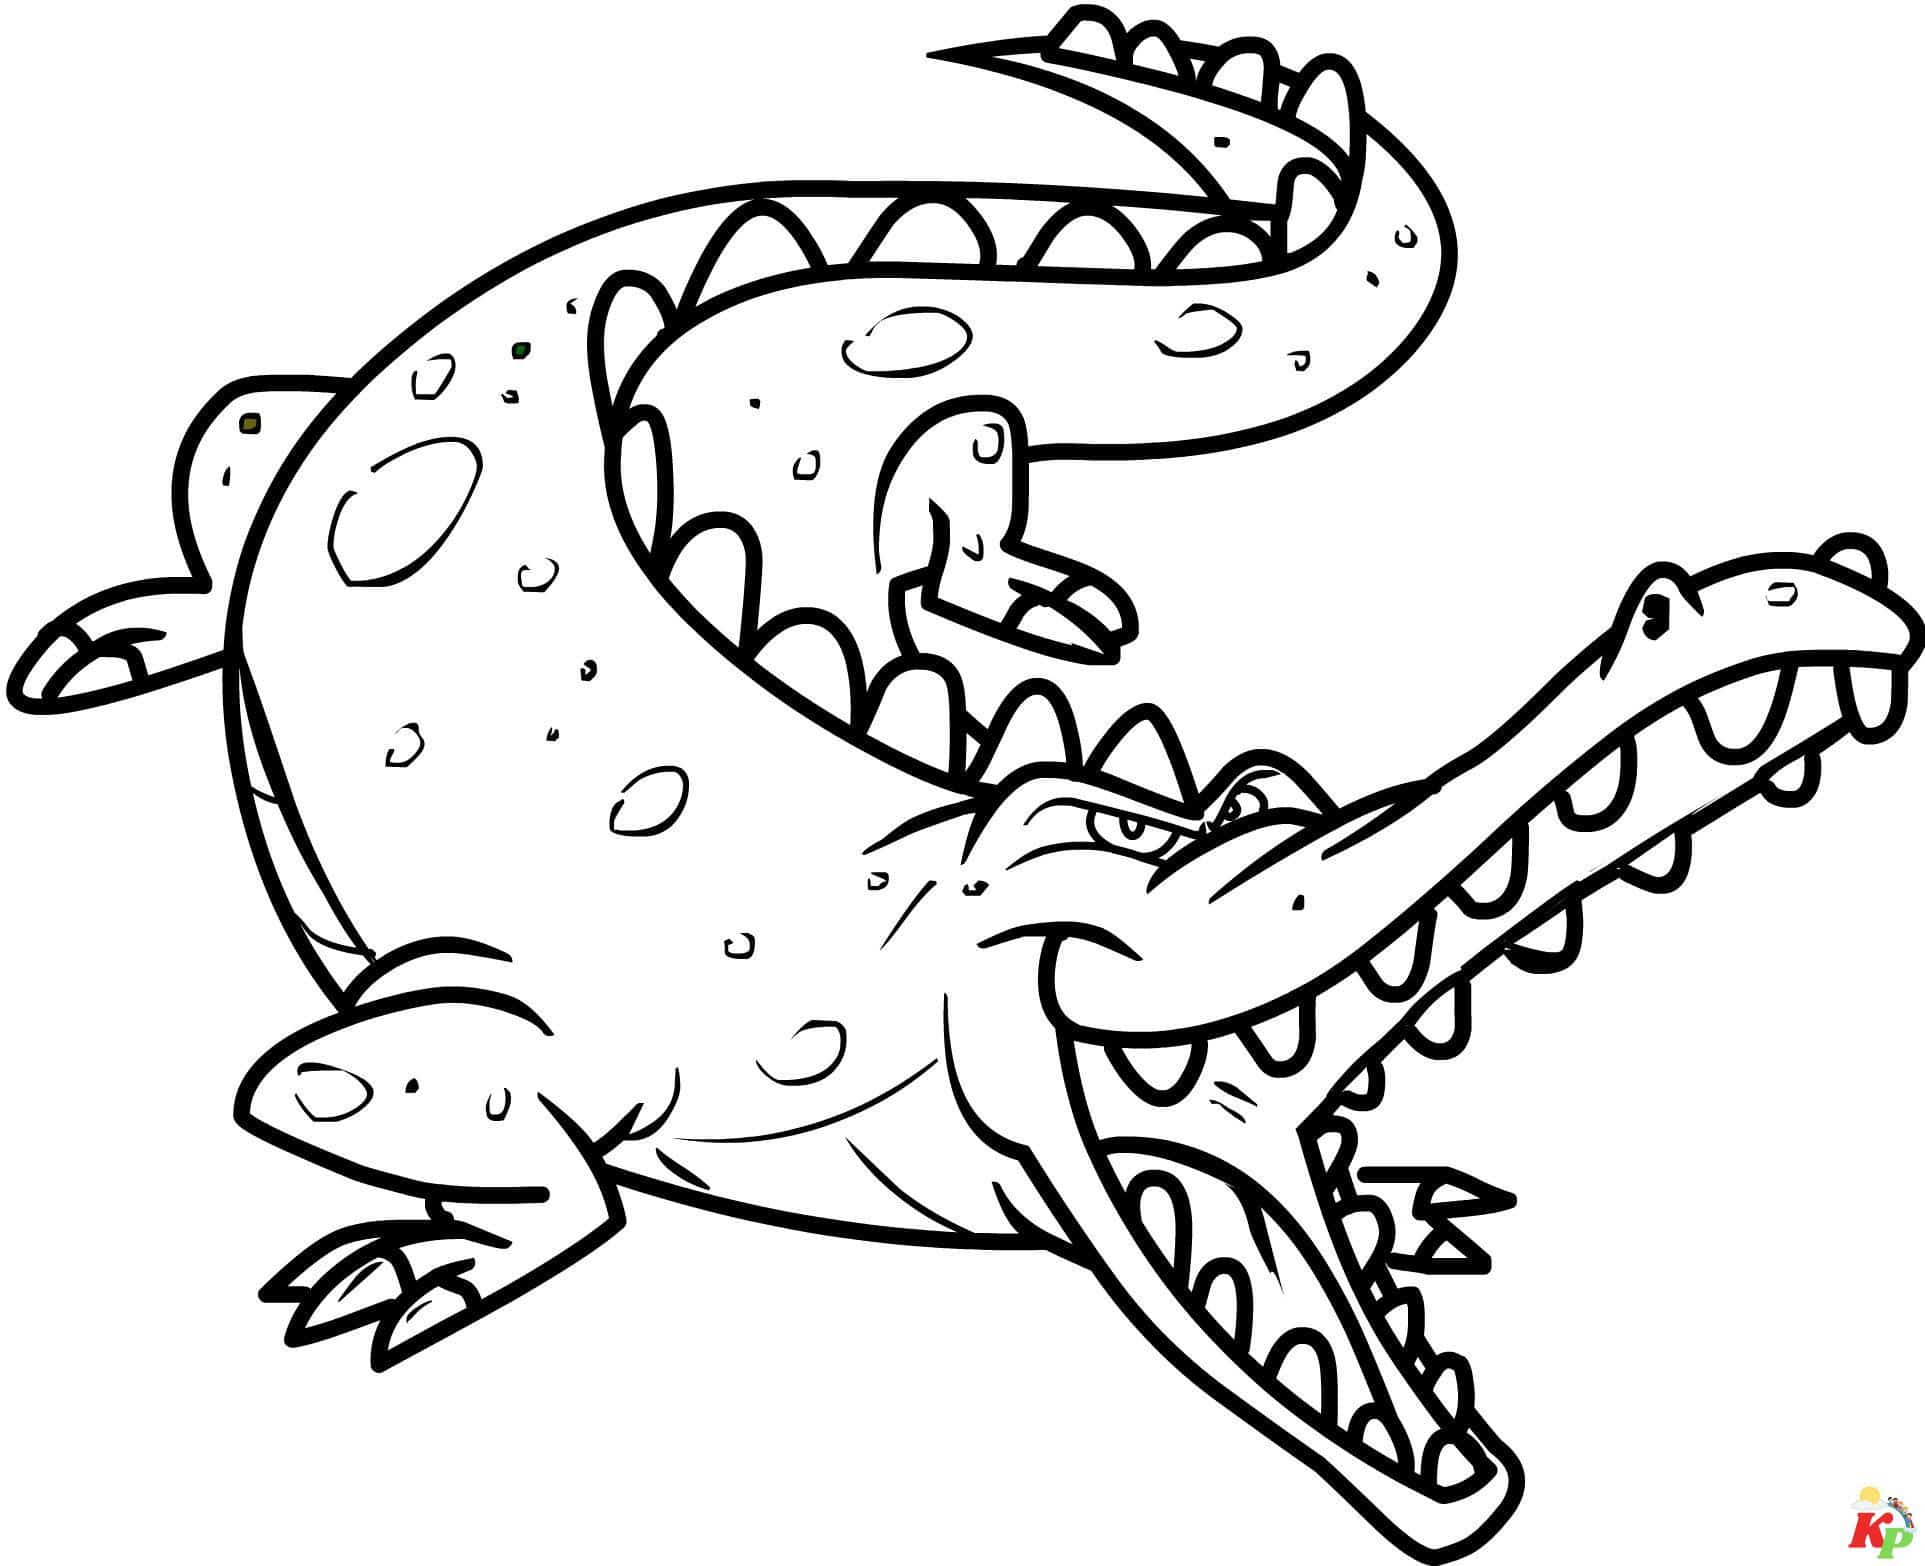 Krokodil11